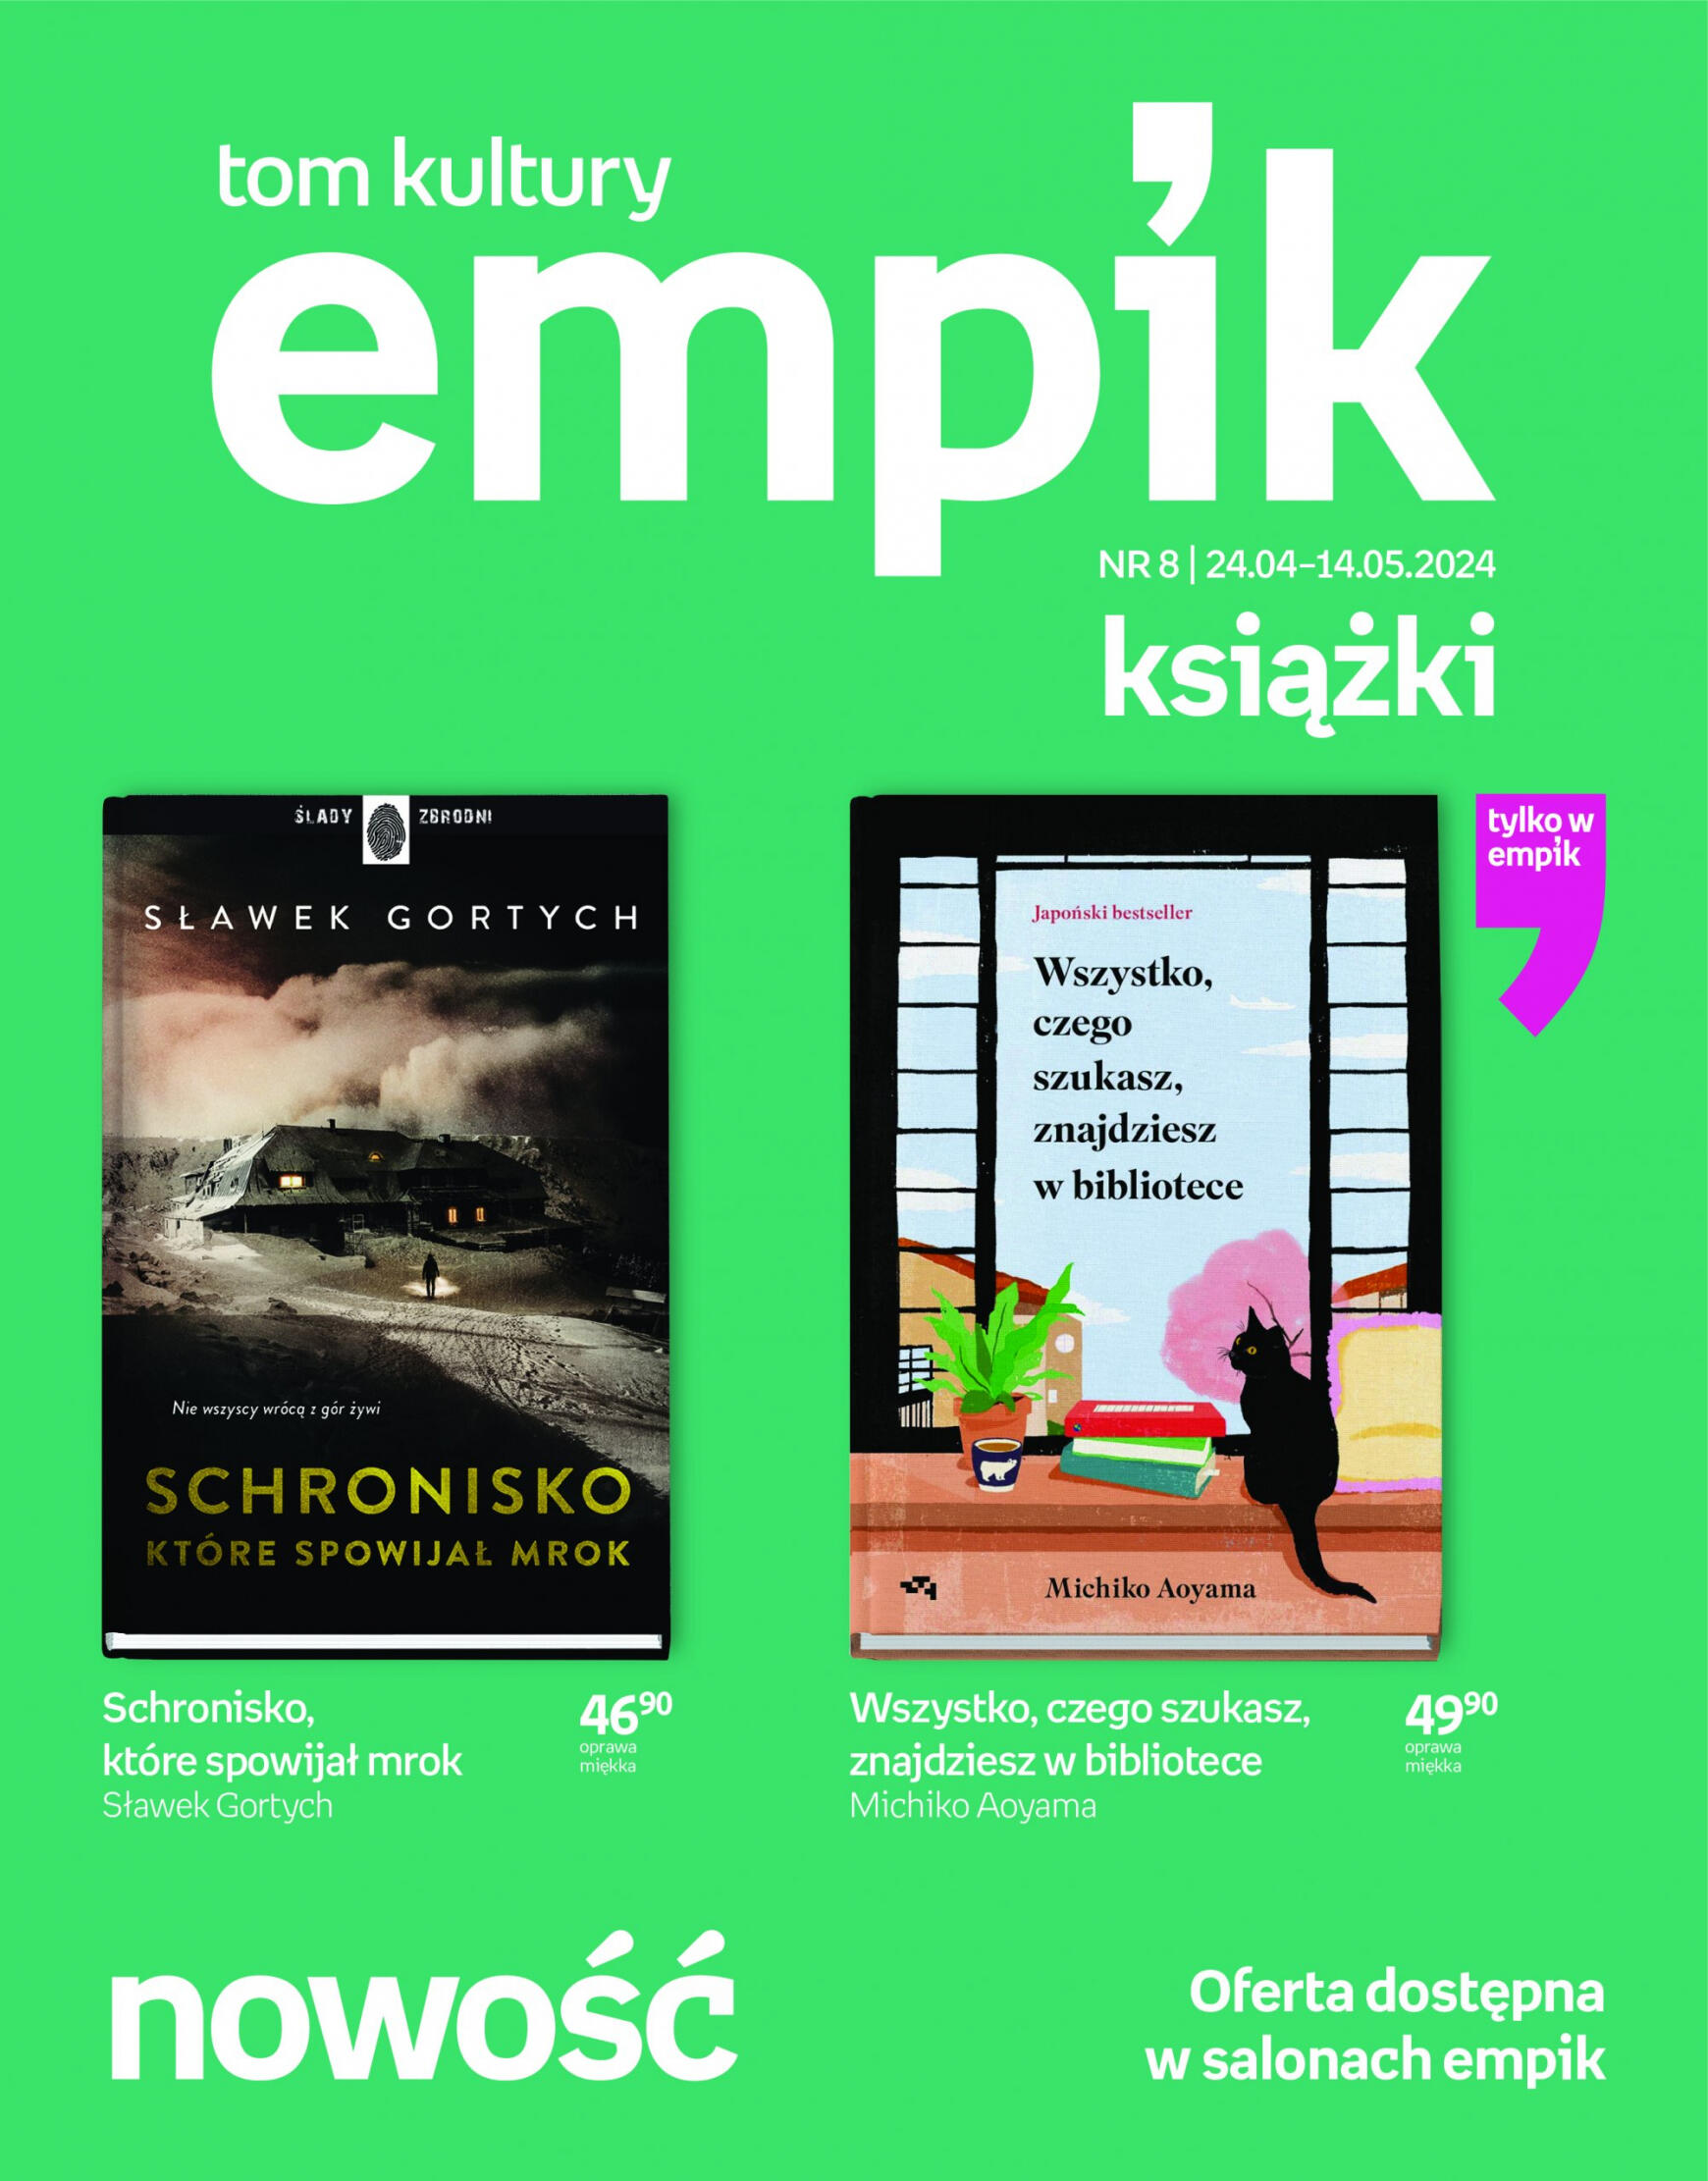 empik - Empik - Książki gazetka aktualna ważna od 24.04. - 14.05.